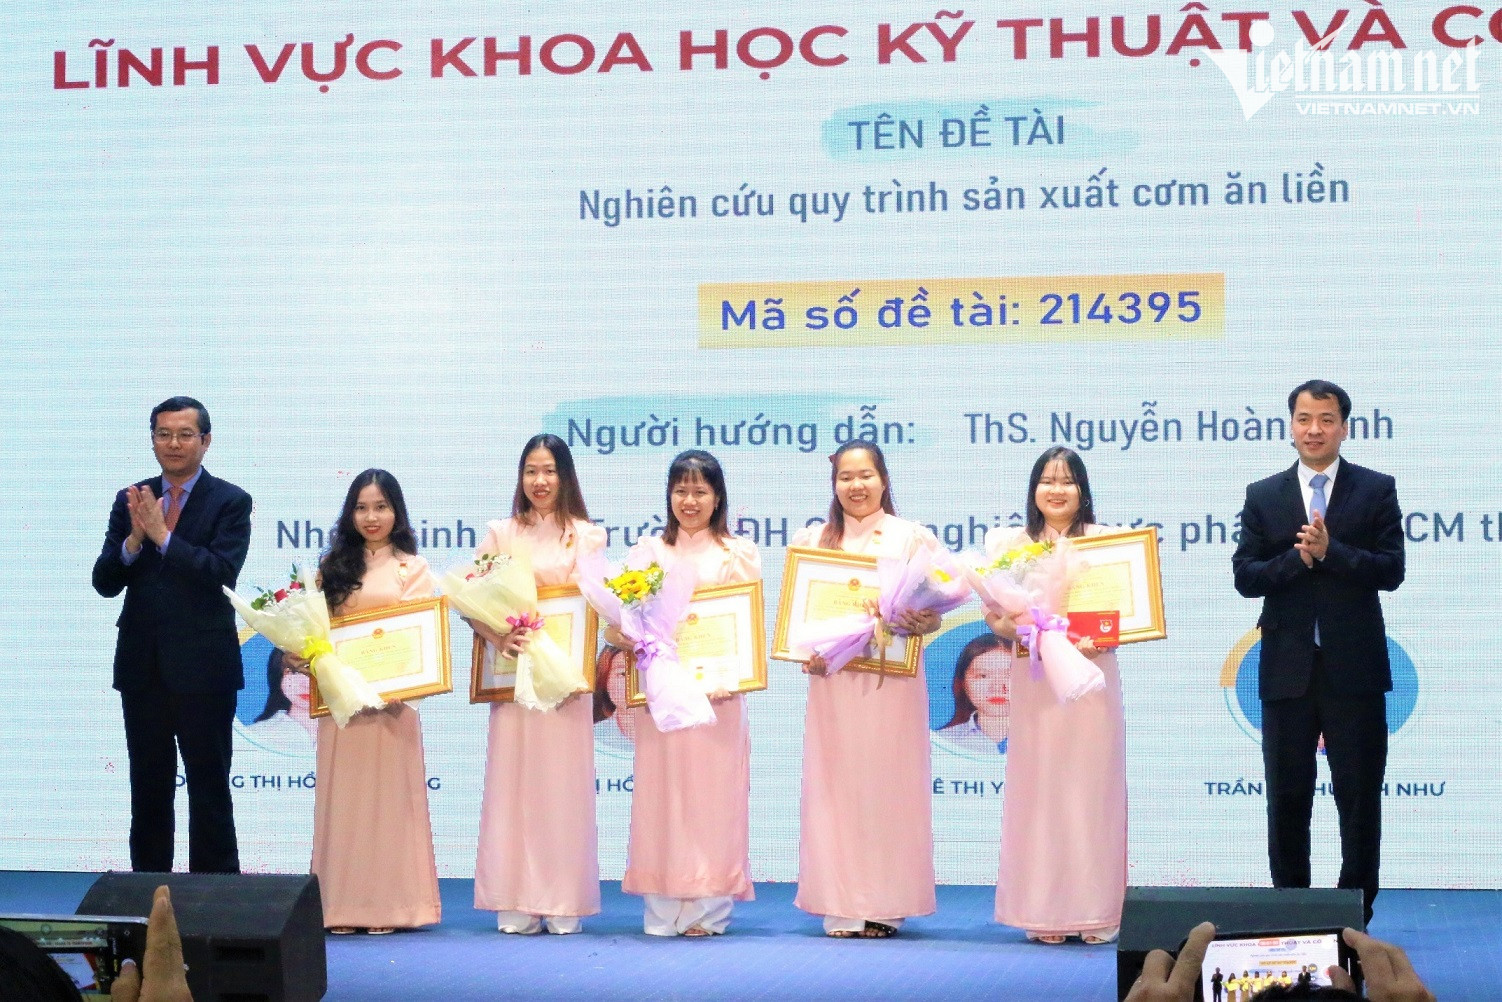 Cơm ăn liền của 5 cô gái giành giải nhất thi khoa học sinh viên